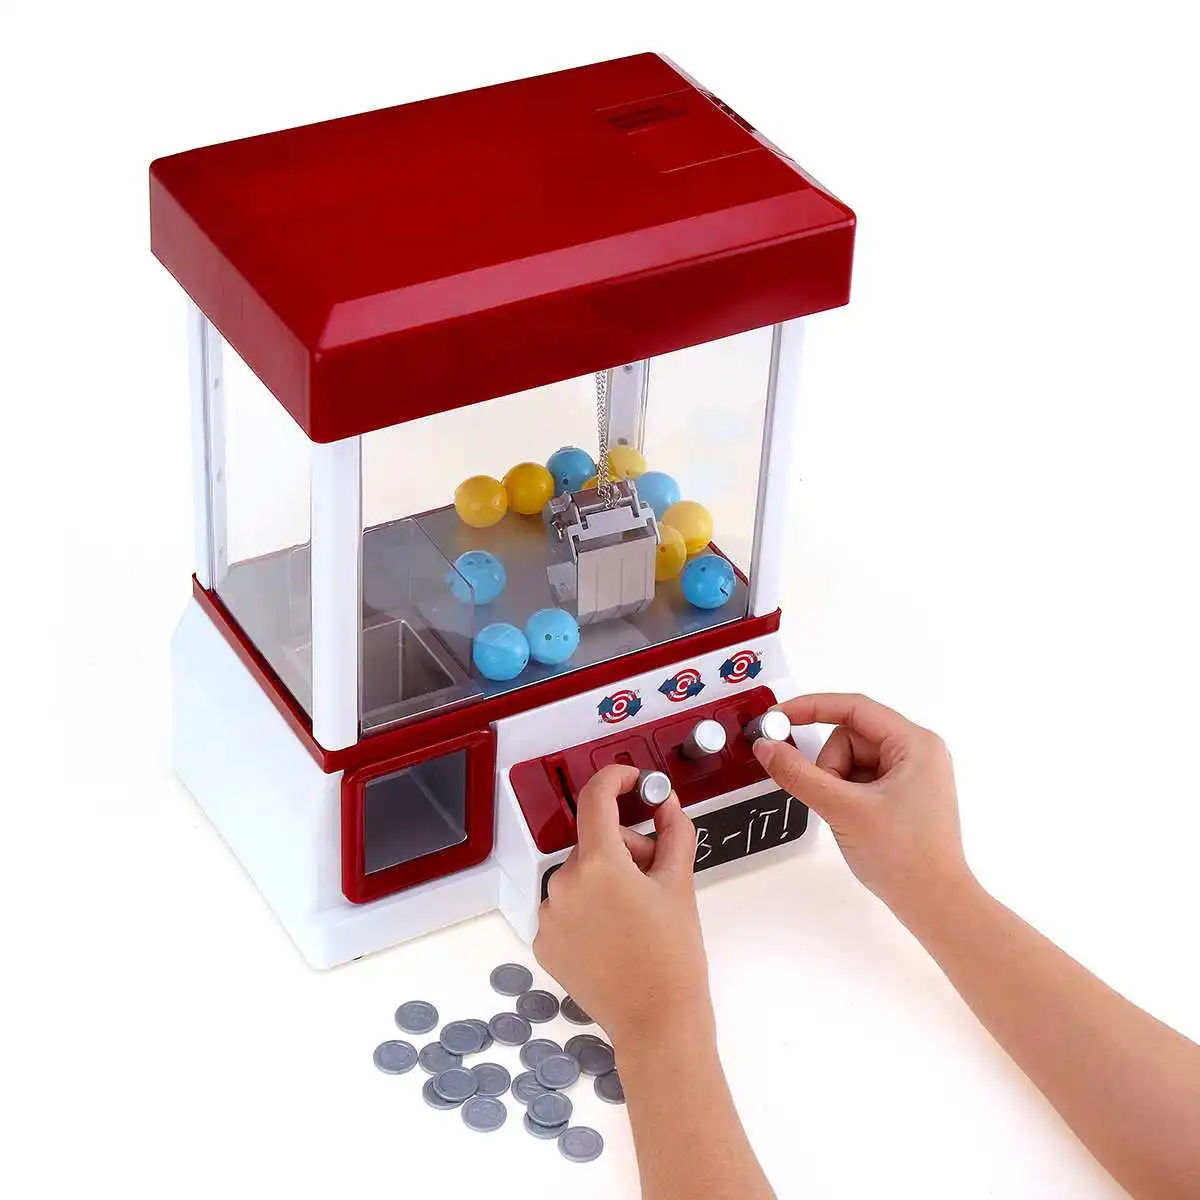 ABS пластик портативная аркадная машина для захвата конфет игрушка моторизованный коготь игра Дети Забавный кран гаджет монетное управление игры развлечения